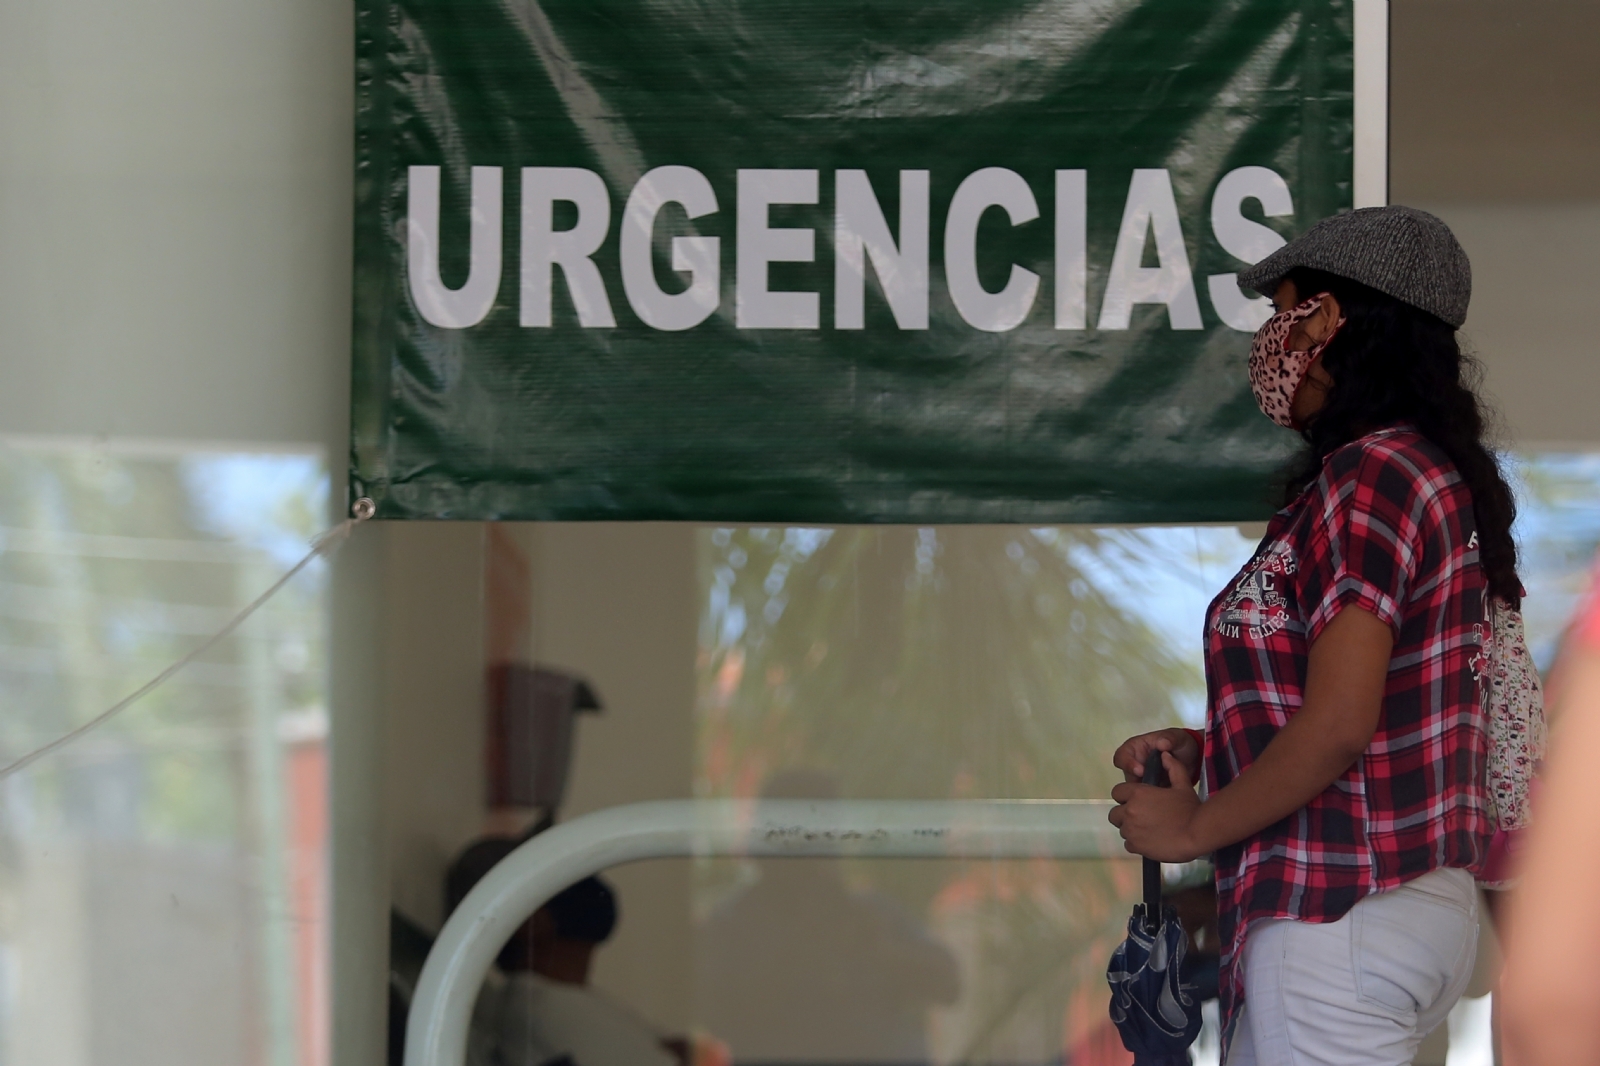 34 mujeres en prisión por recurrir al aborto en Yucatán